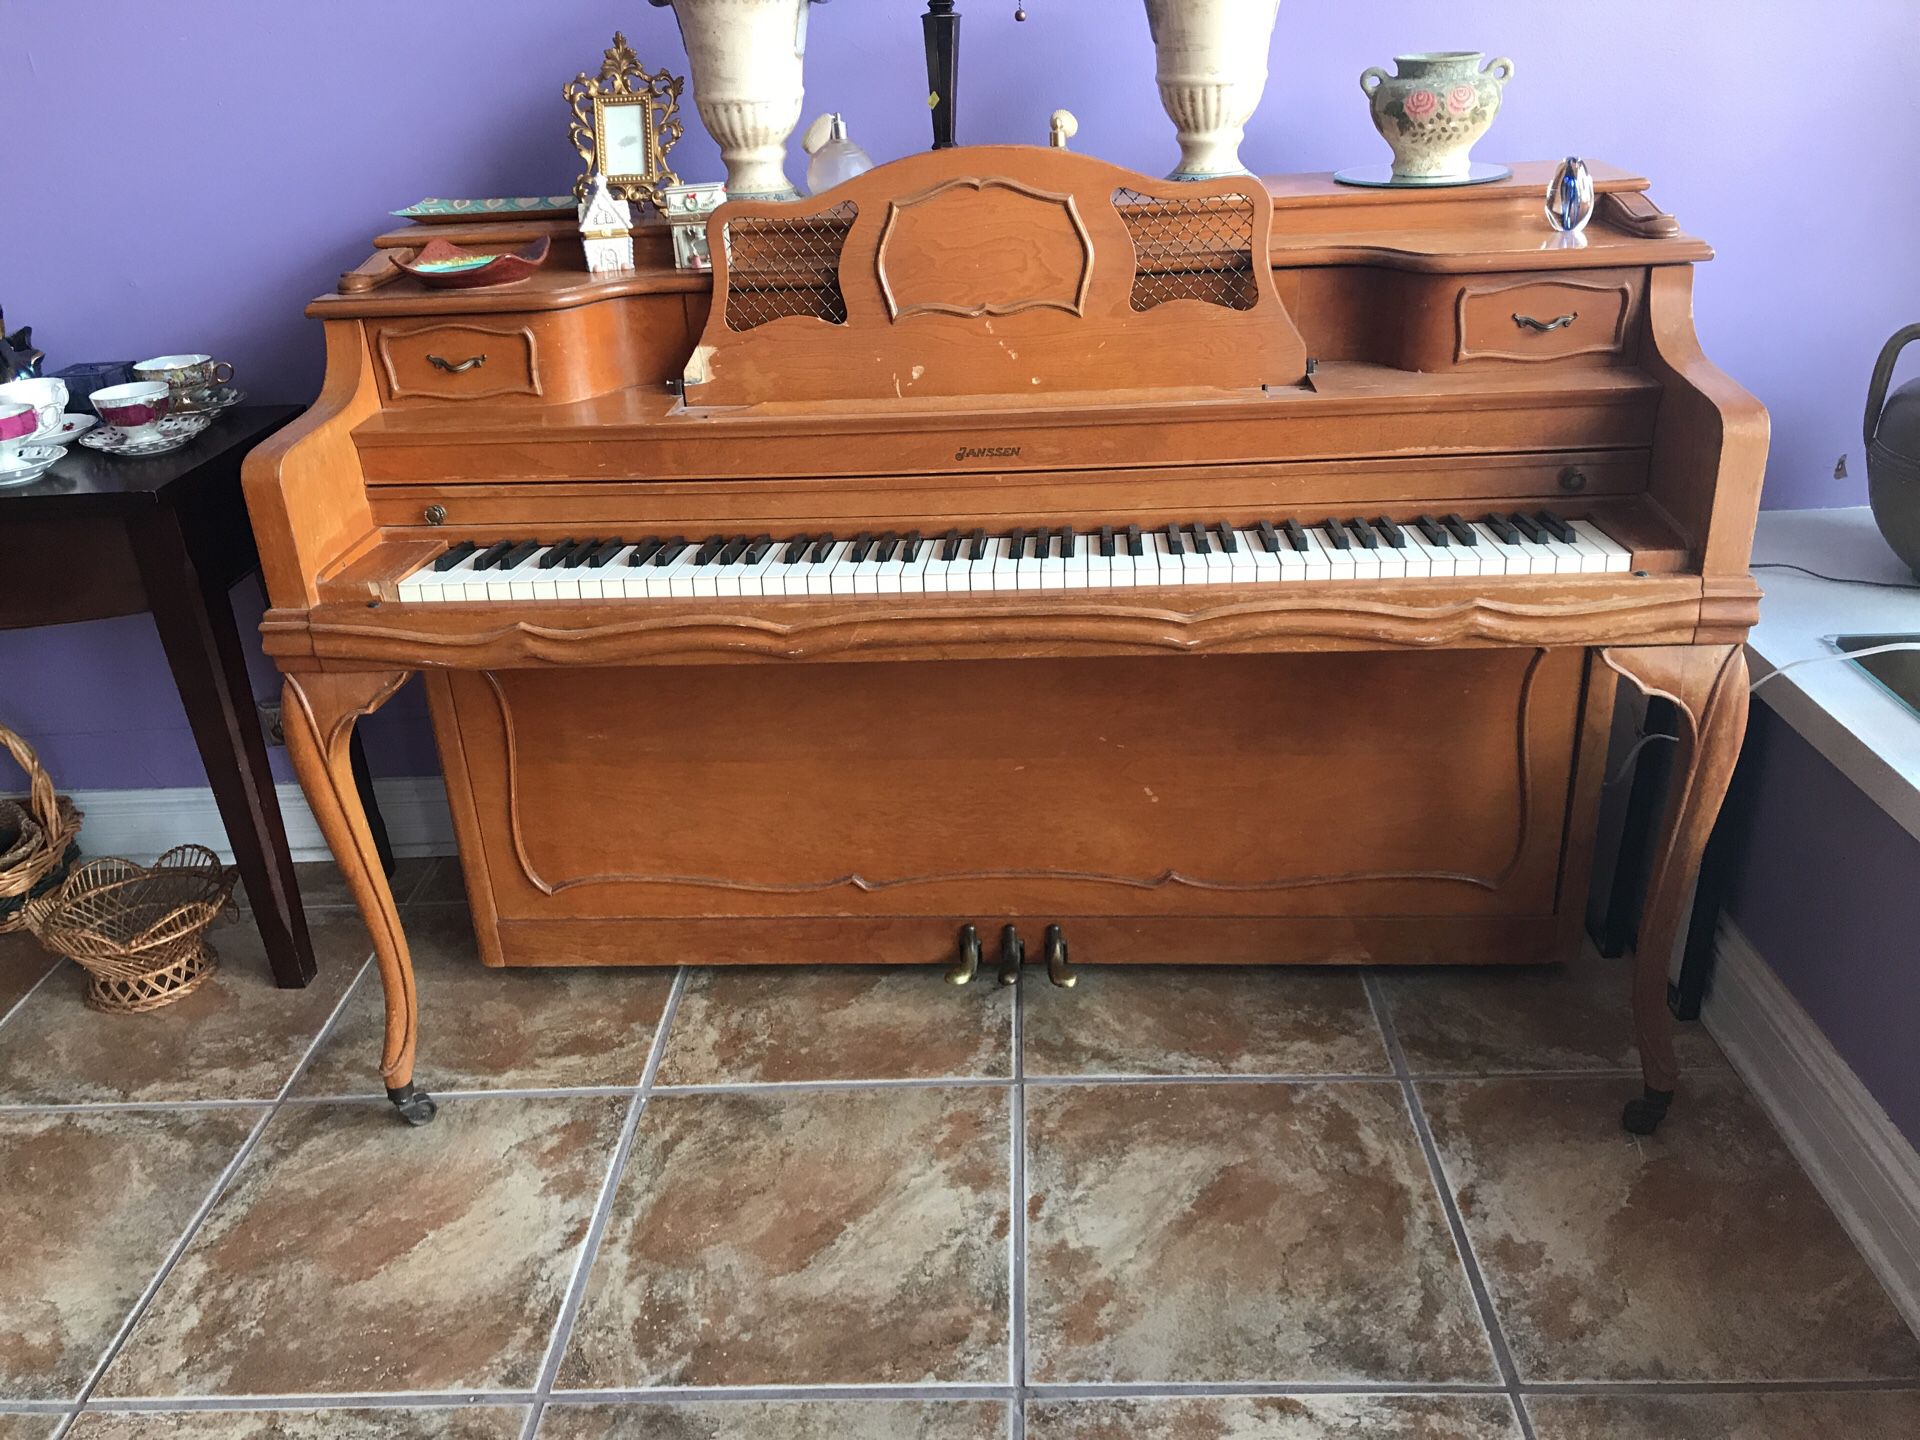 Jansen piano